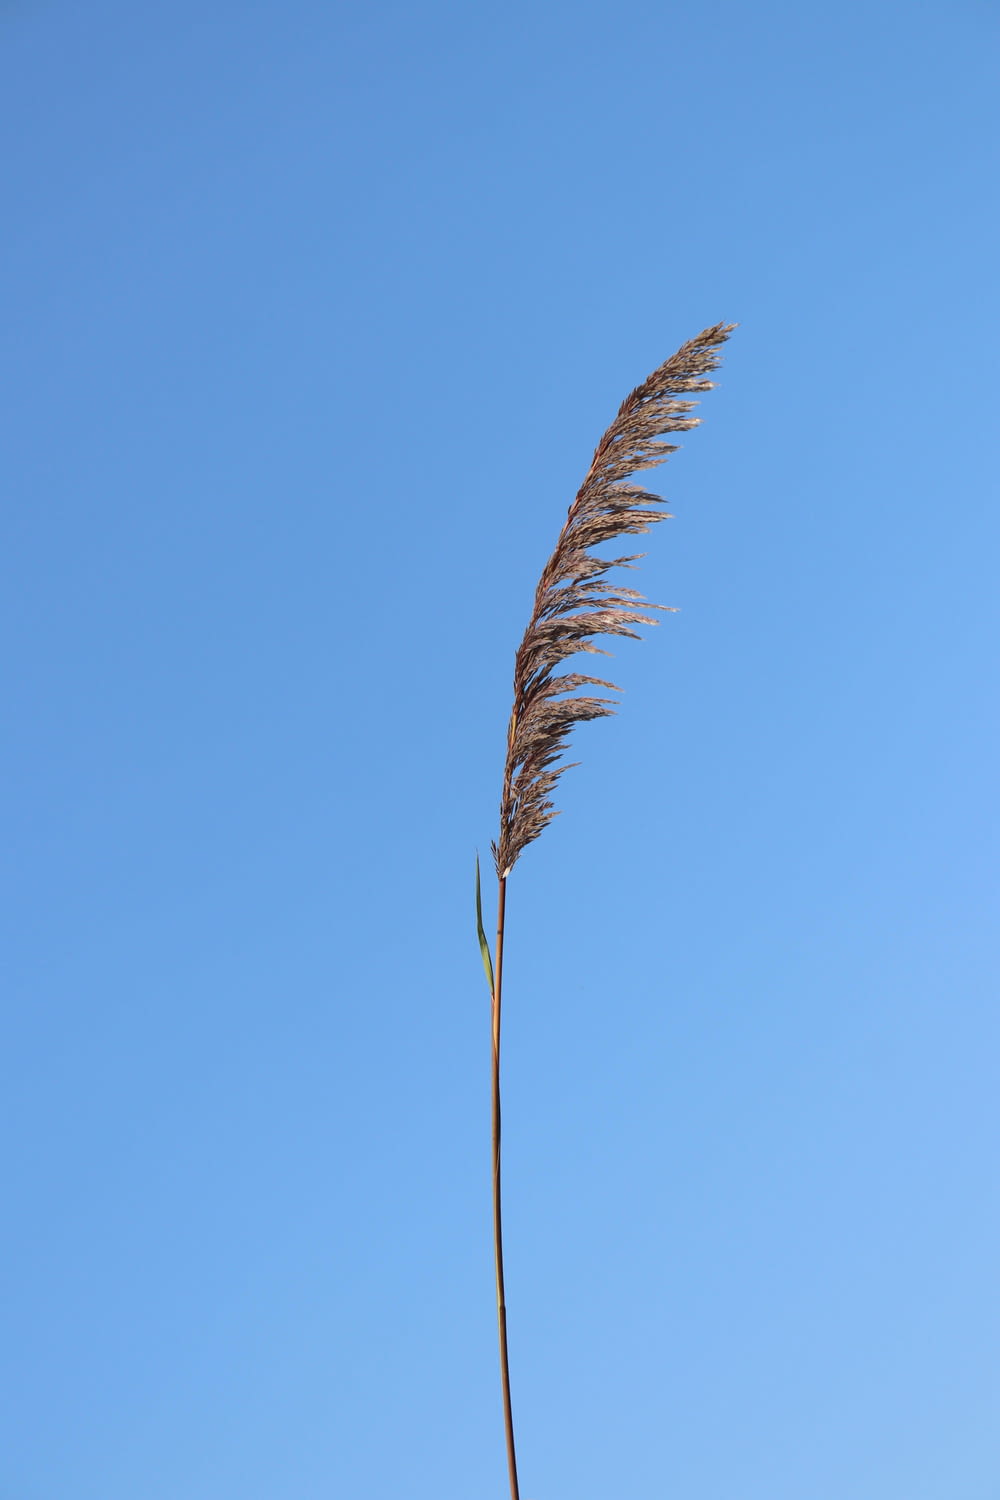 brown leaf under blue sky during daytime